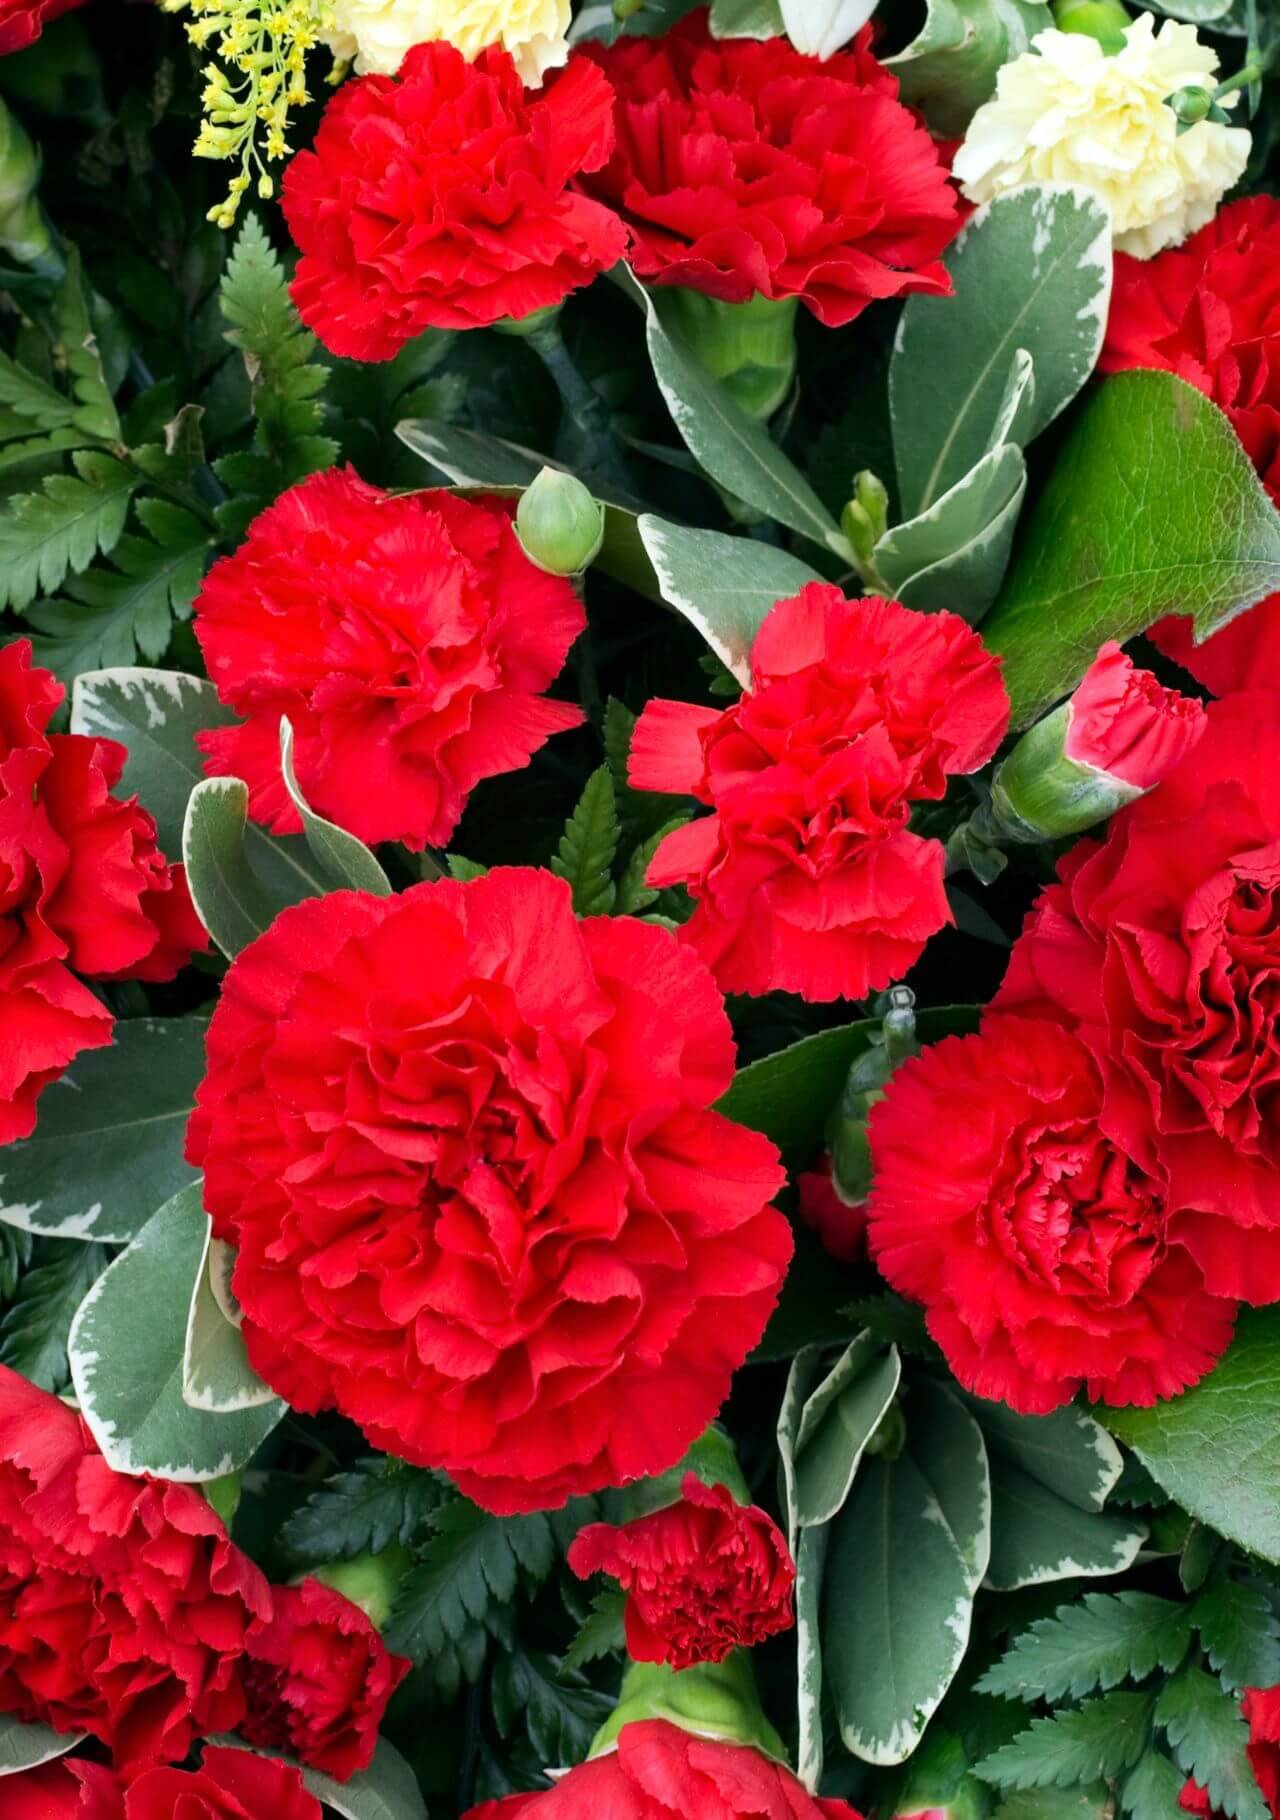 Plantas con flores rojas: clavel.